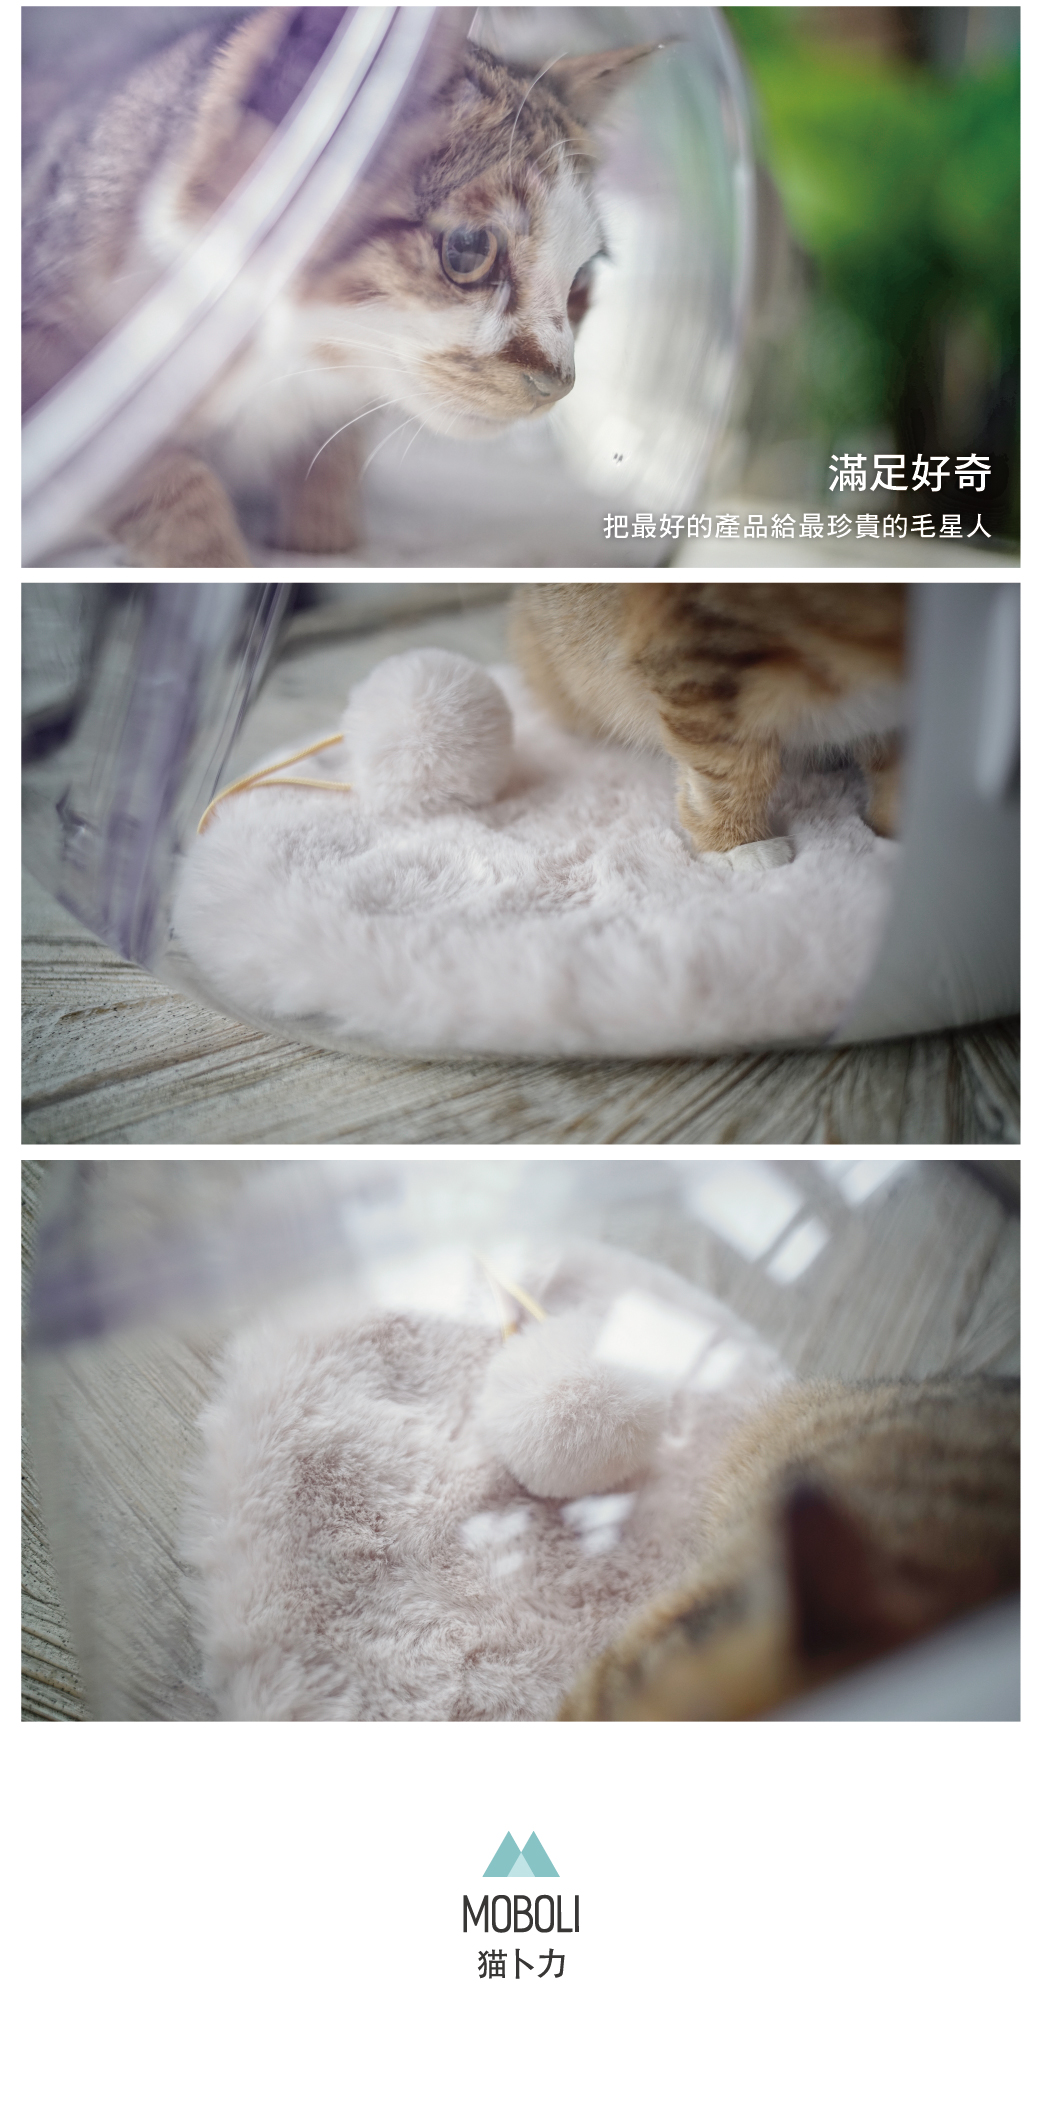 ｜Moboli 貓卜力｜  寵物絨墊 冬季小絨墊 3色 寵物毯 睡墊 保暖絨毛墊